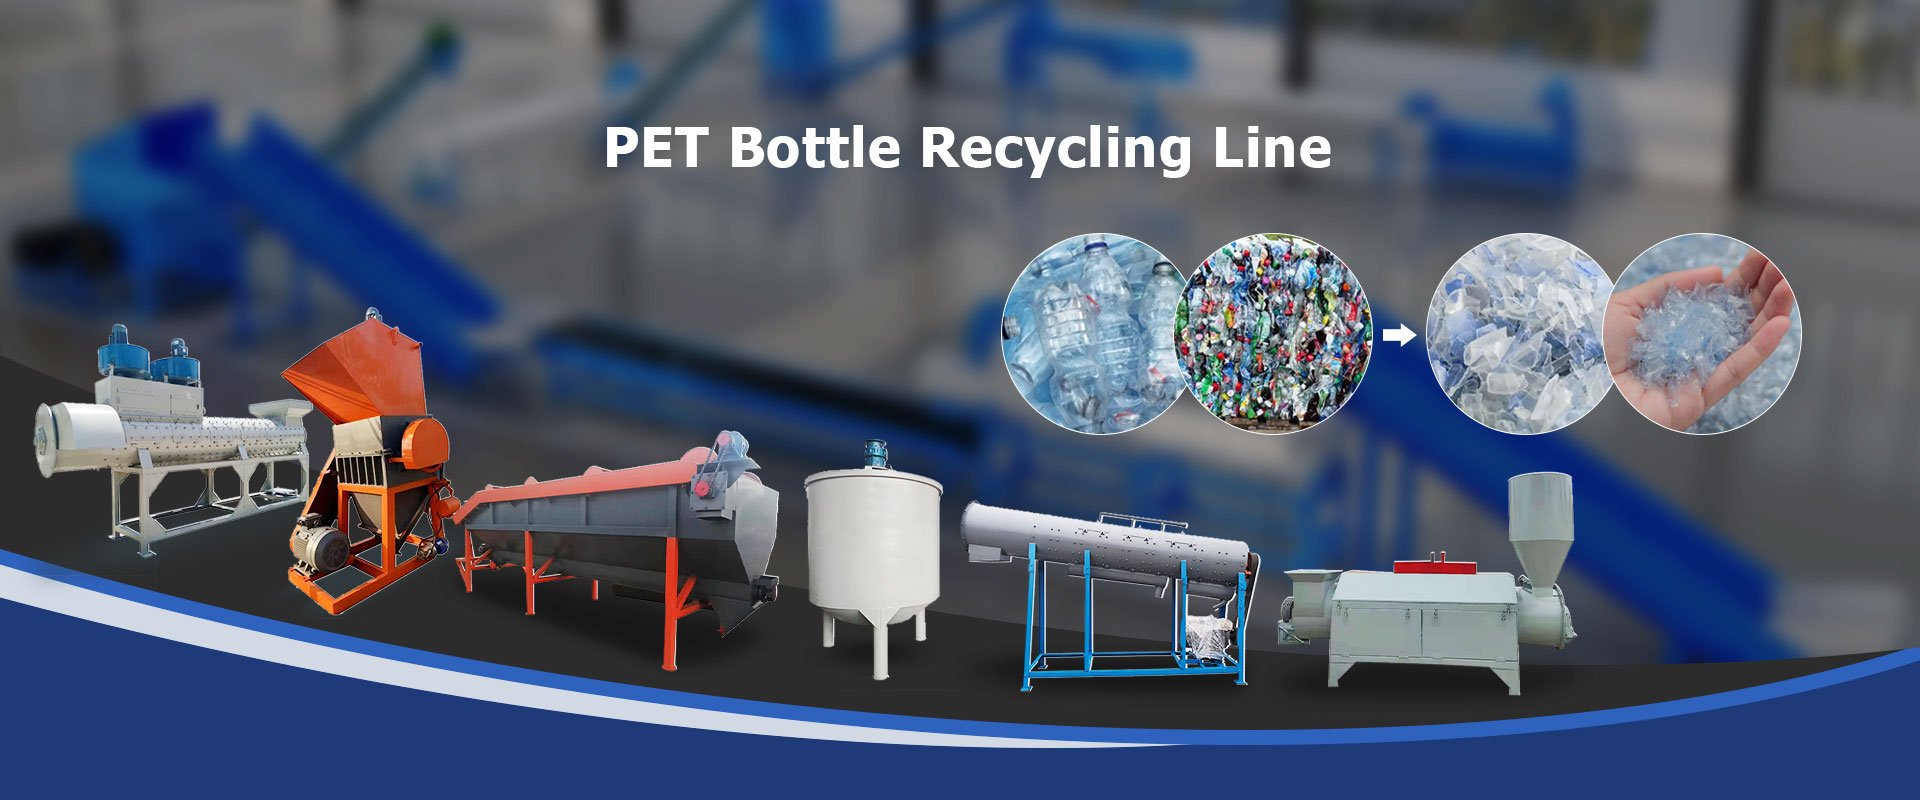 Línea de reciclaje de botellas de PET